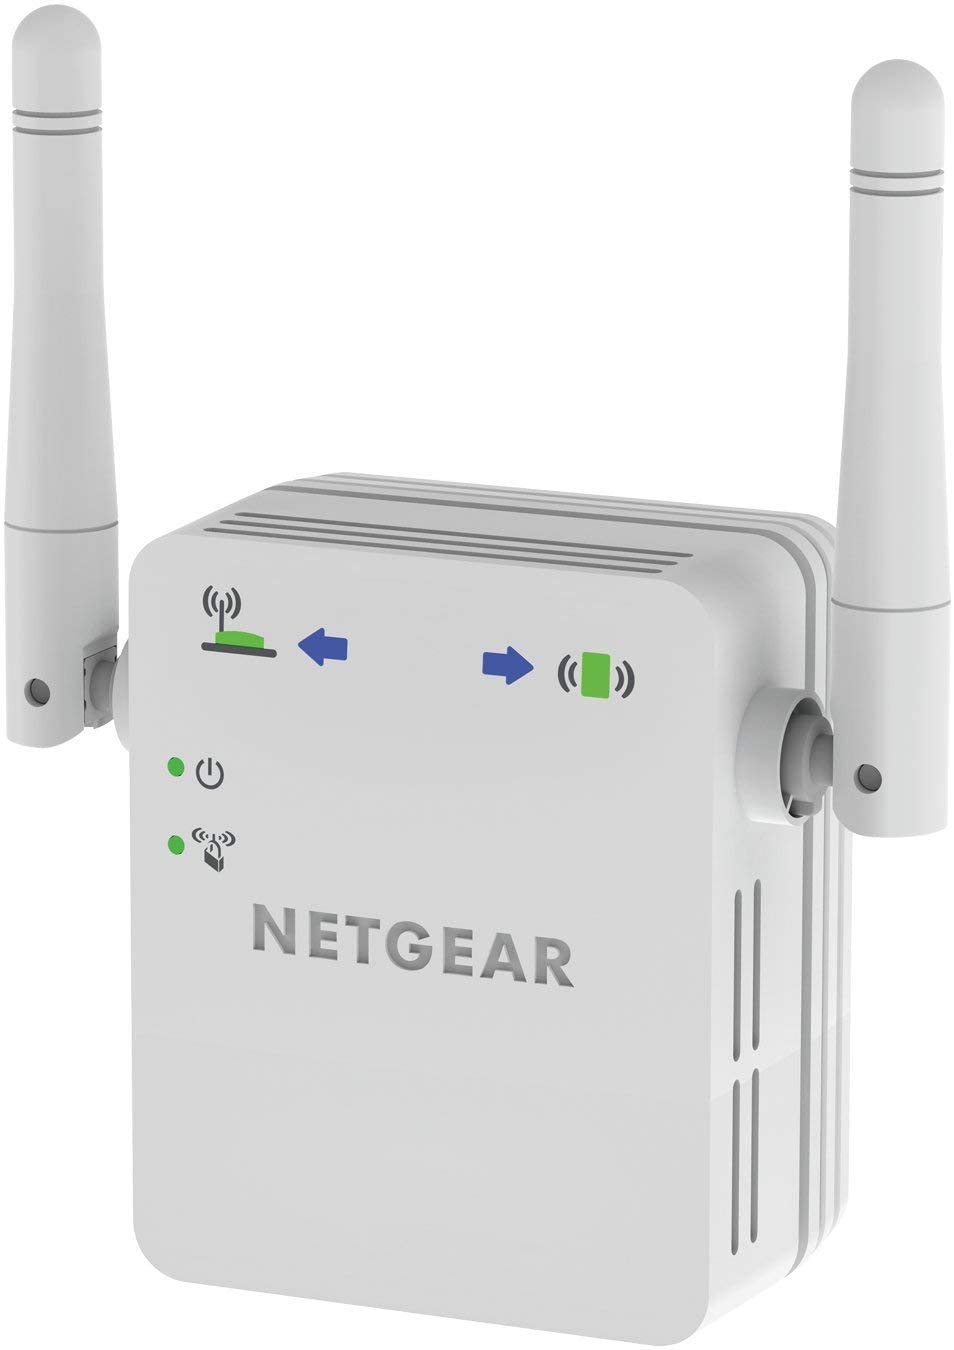 Netgear WN3000RP Ripetitore WiFi N300, WiFi Extender Single Band, Porta Lan, Amplificatore WiFi Compatibile con Modem Fibra e ADSL